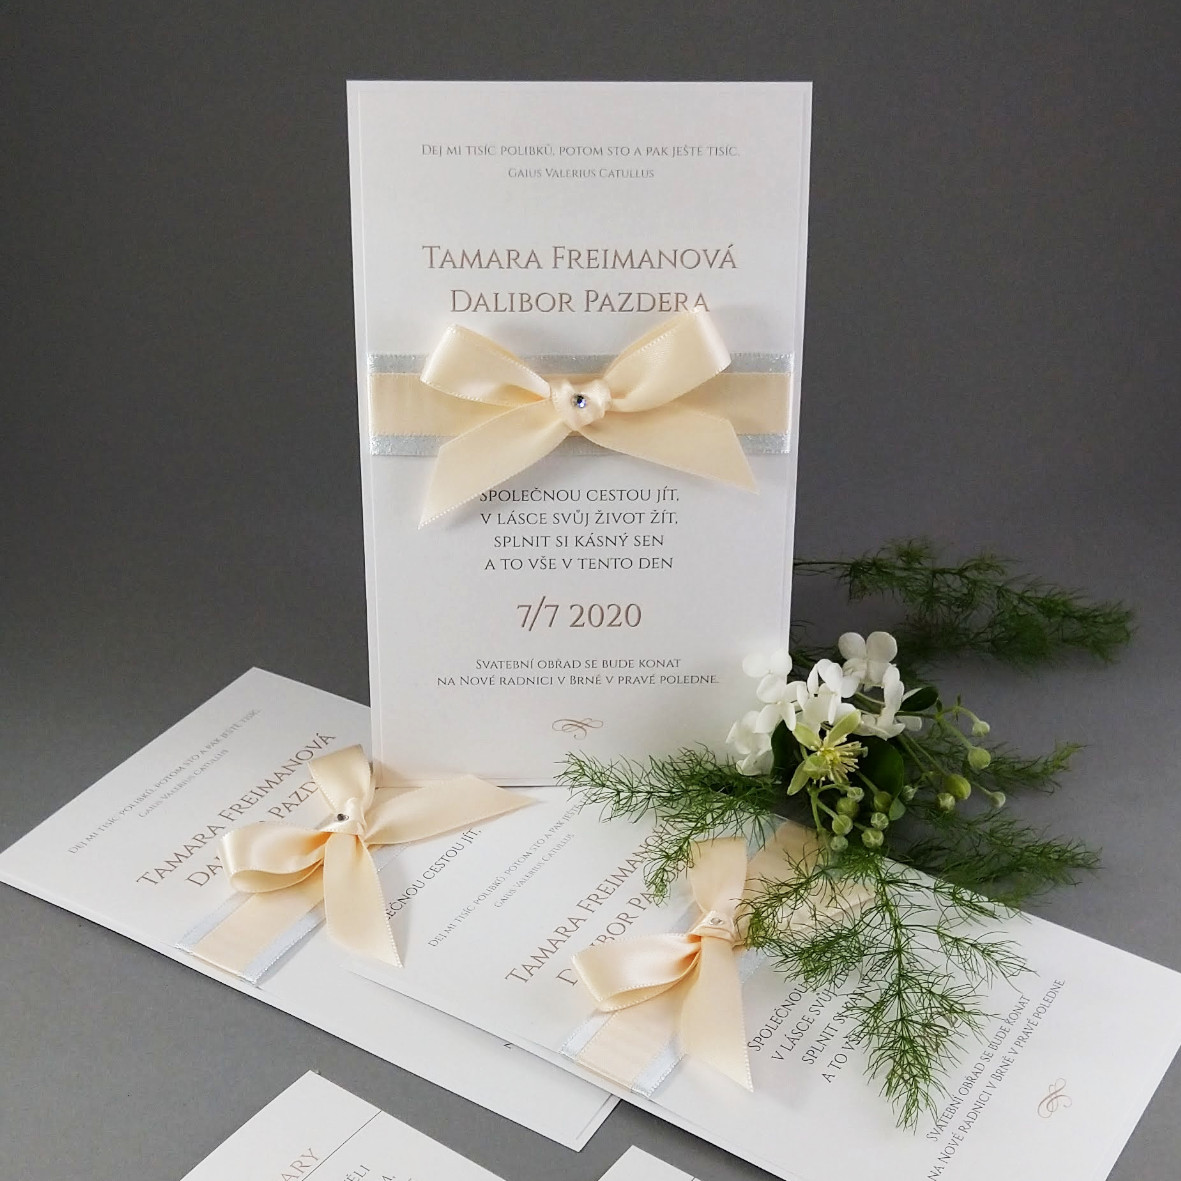 Svatební oznámení – kašírovaná karta s atlasovými stuhami a krystalem, barva bílá + broskvová + stříbrná